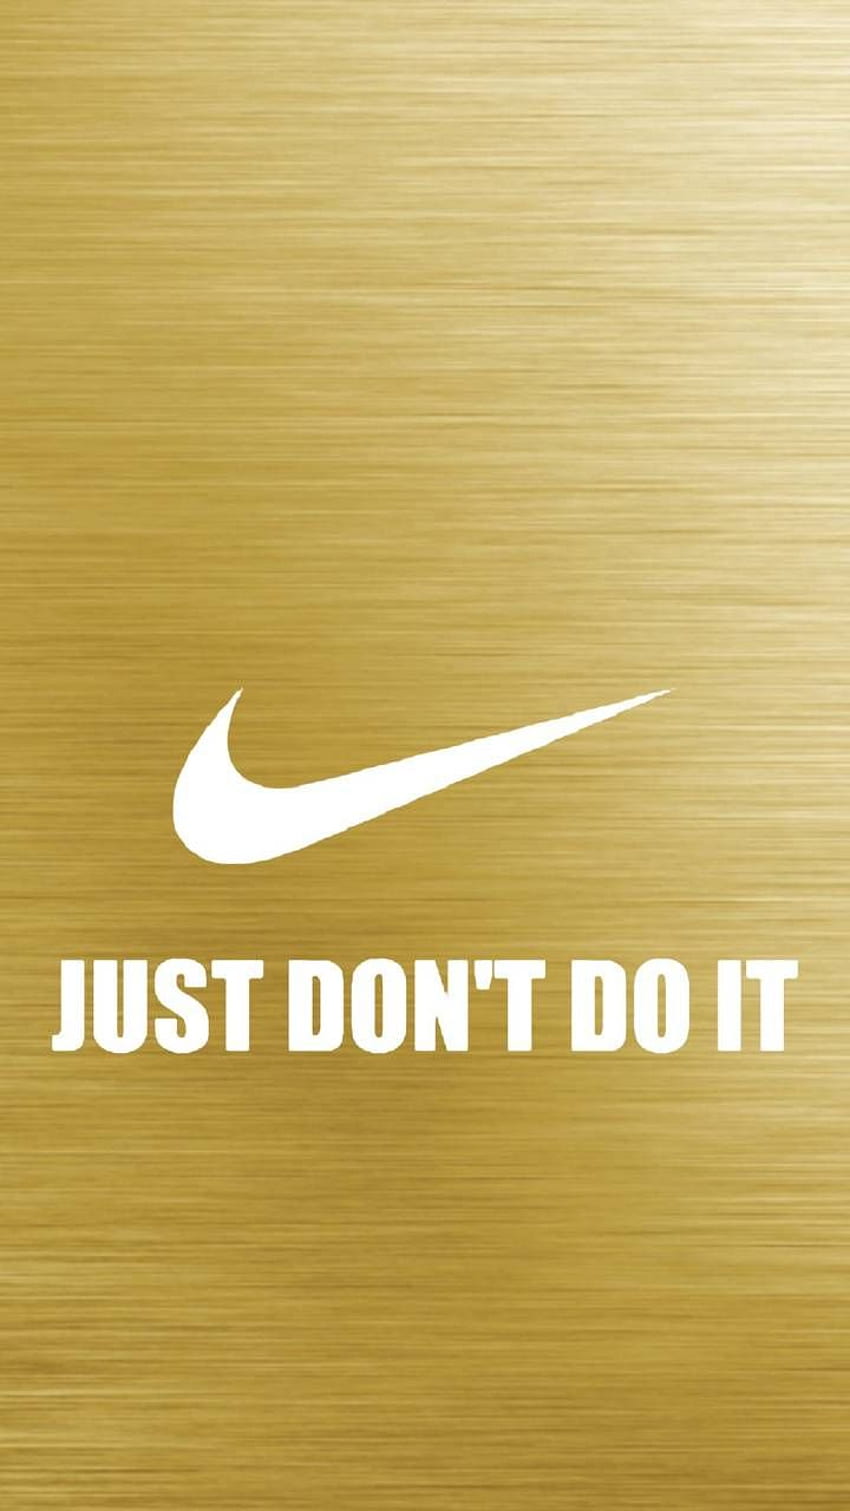 Nike emas wallpaper ponsel HD